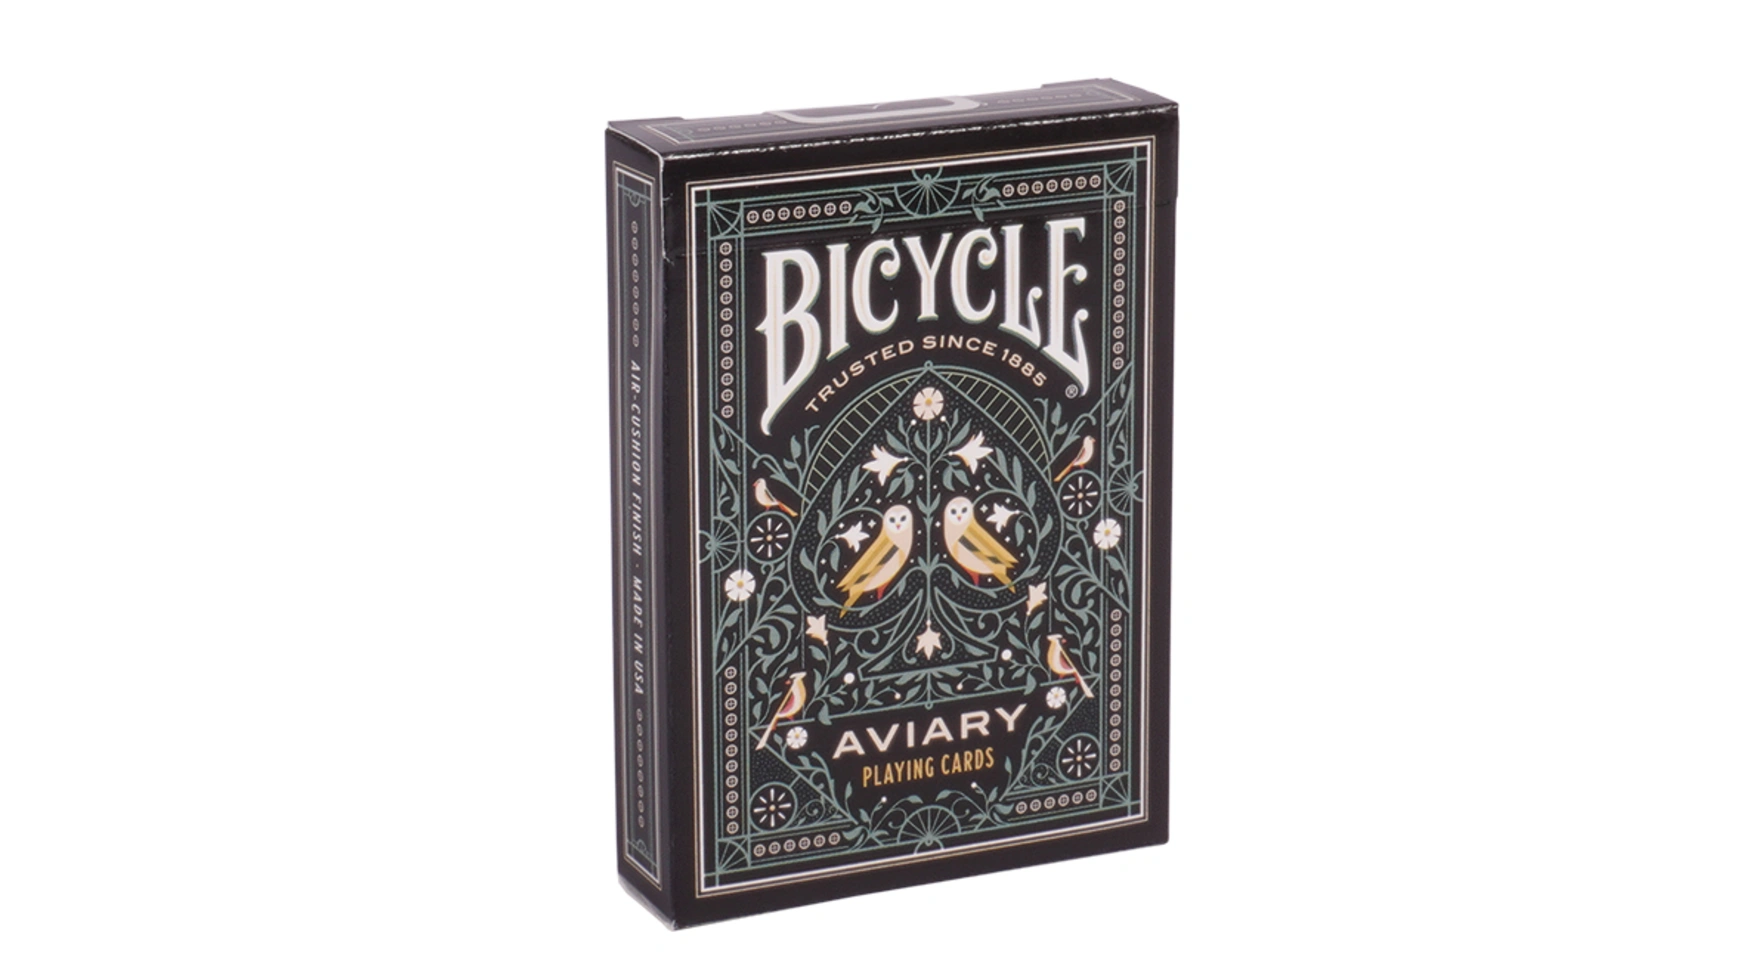 Bicycle Вольер, игральные карты игральные карты bicycle dark mode темный режим